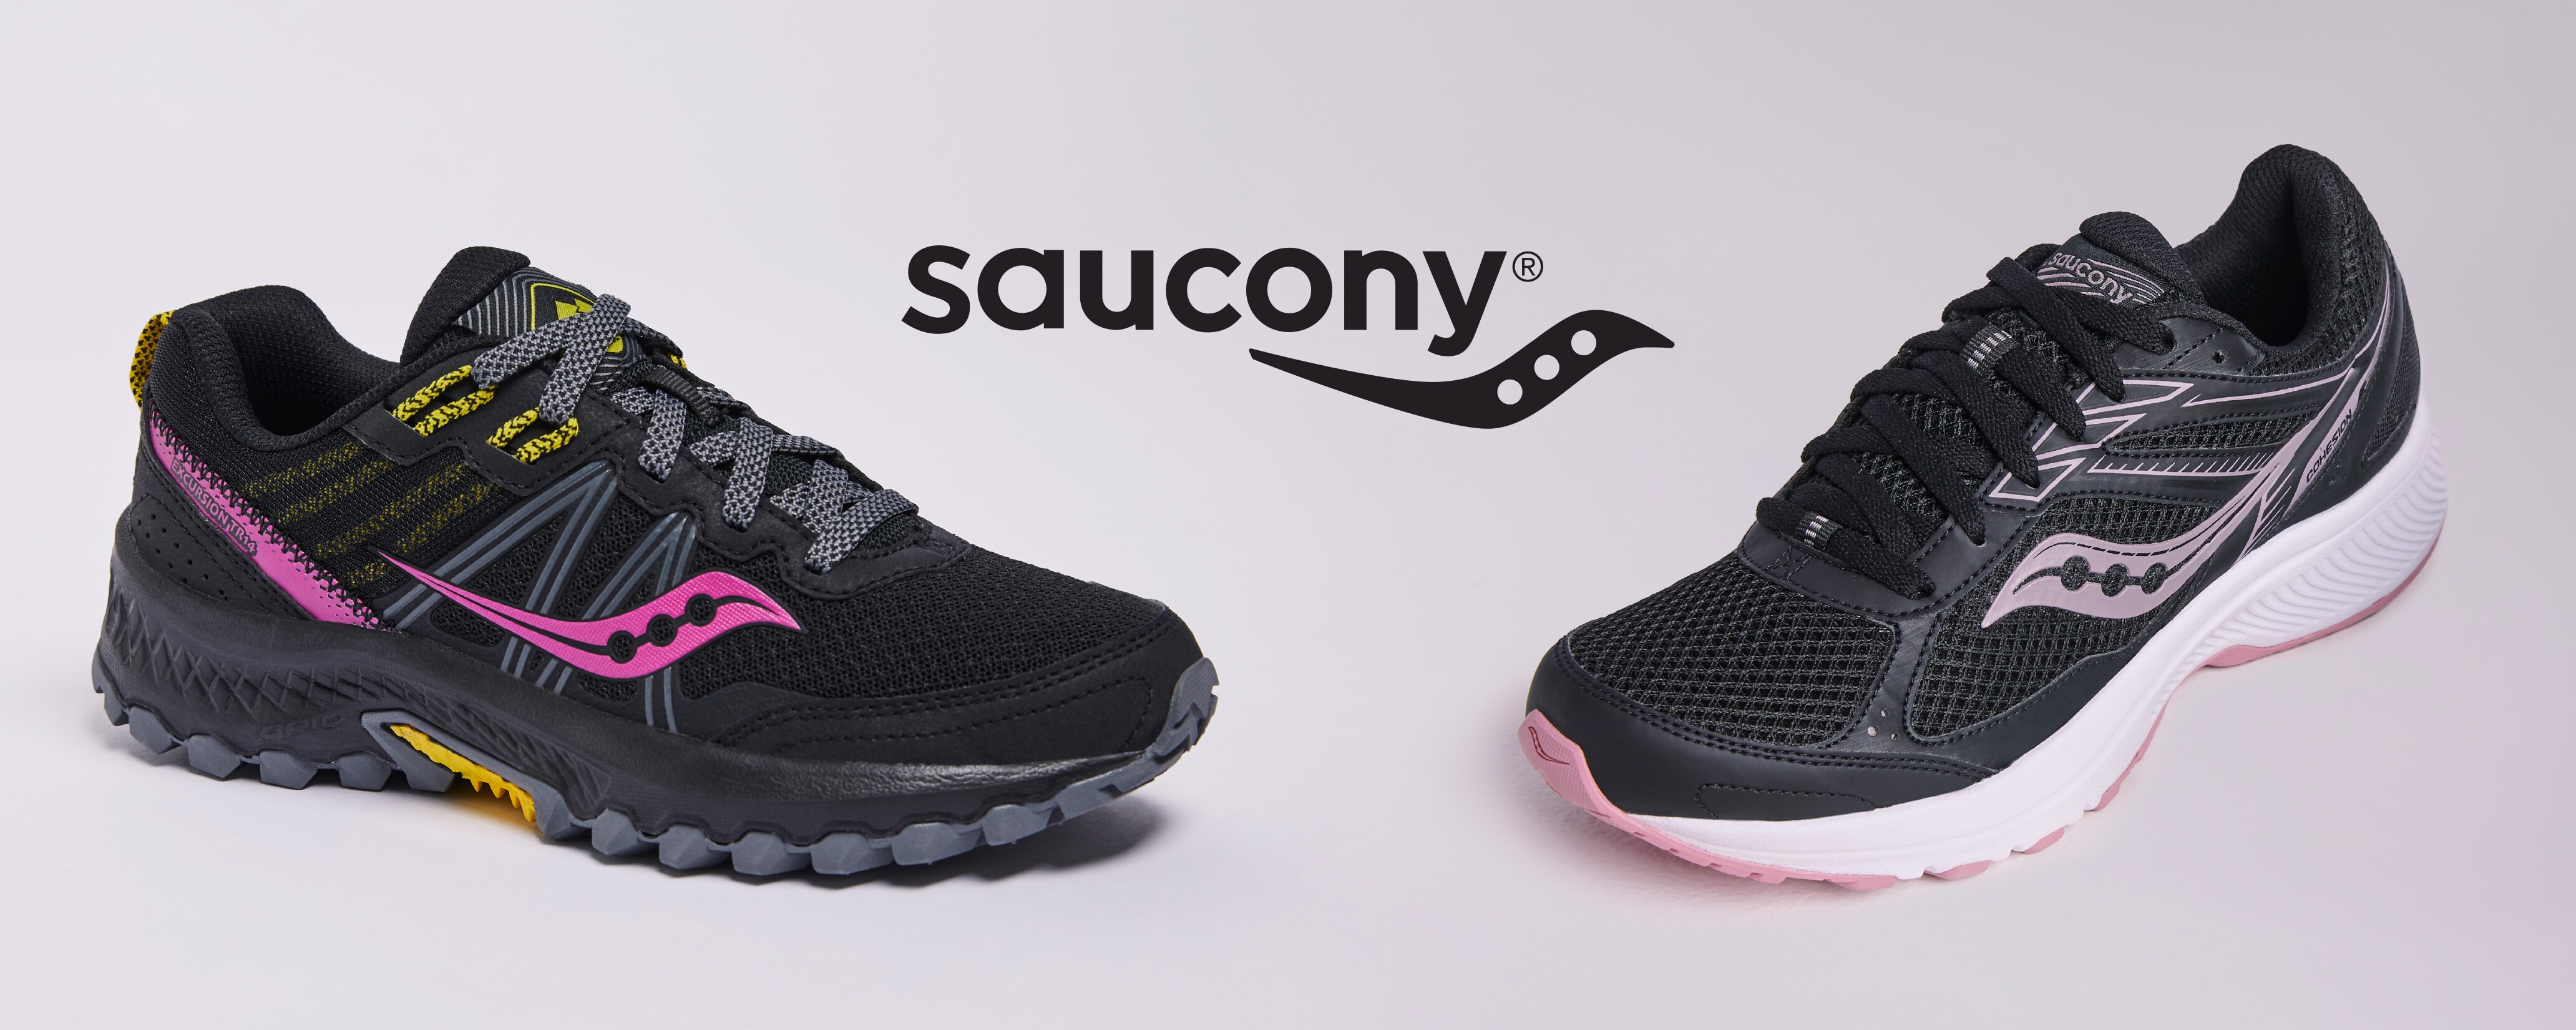 saucony sandals